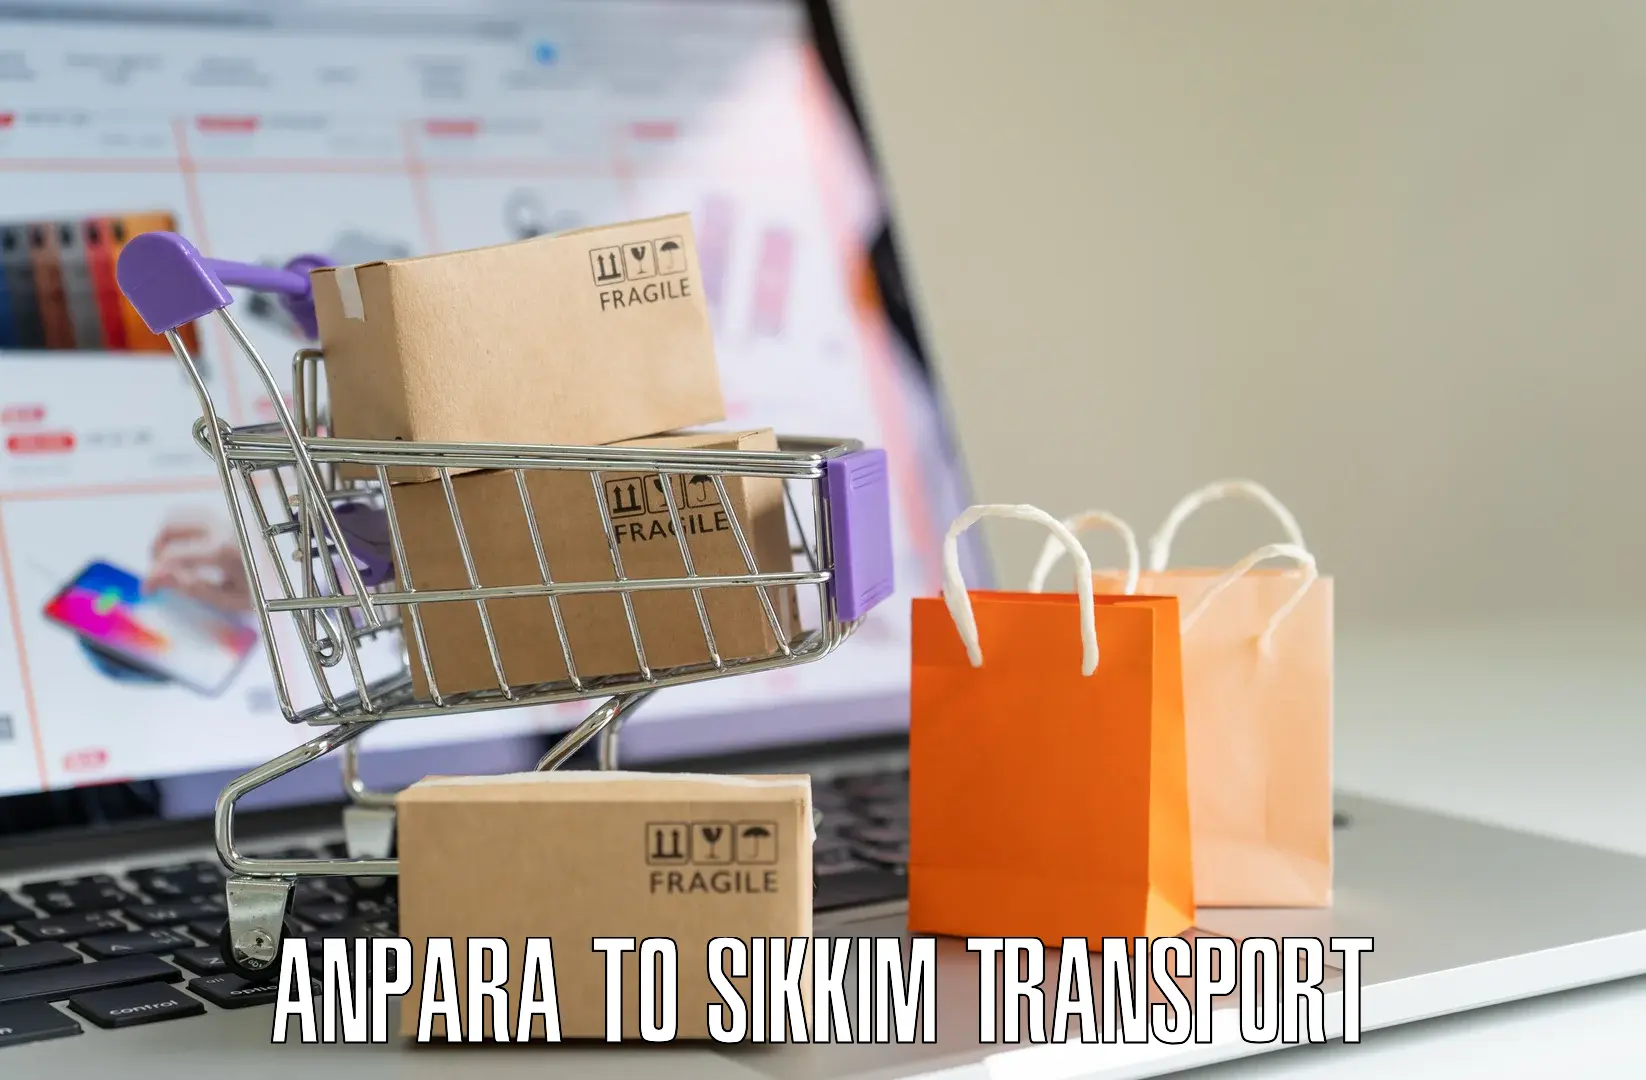 Shipping services Anpara to Gangtok